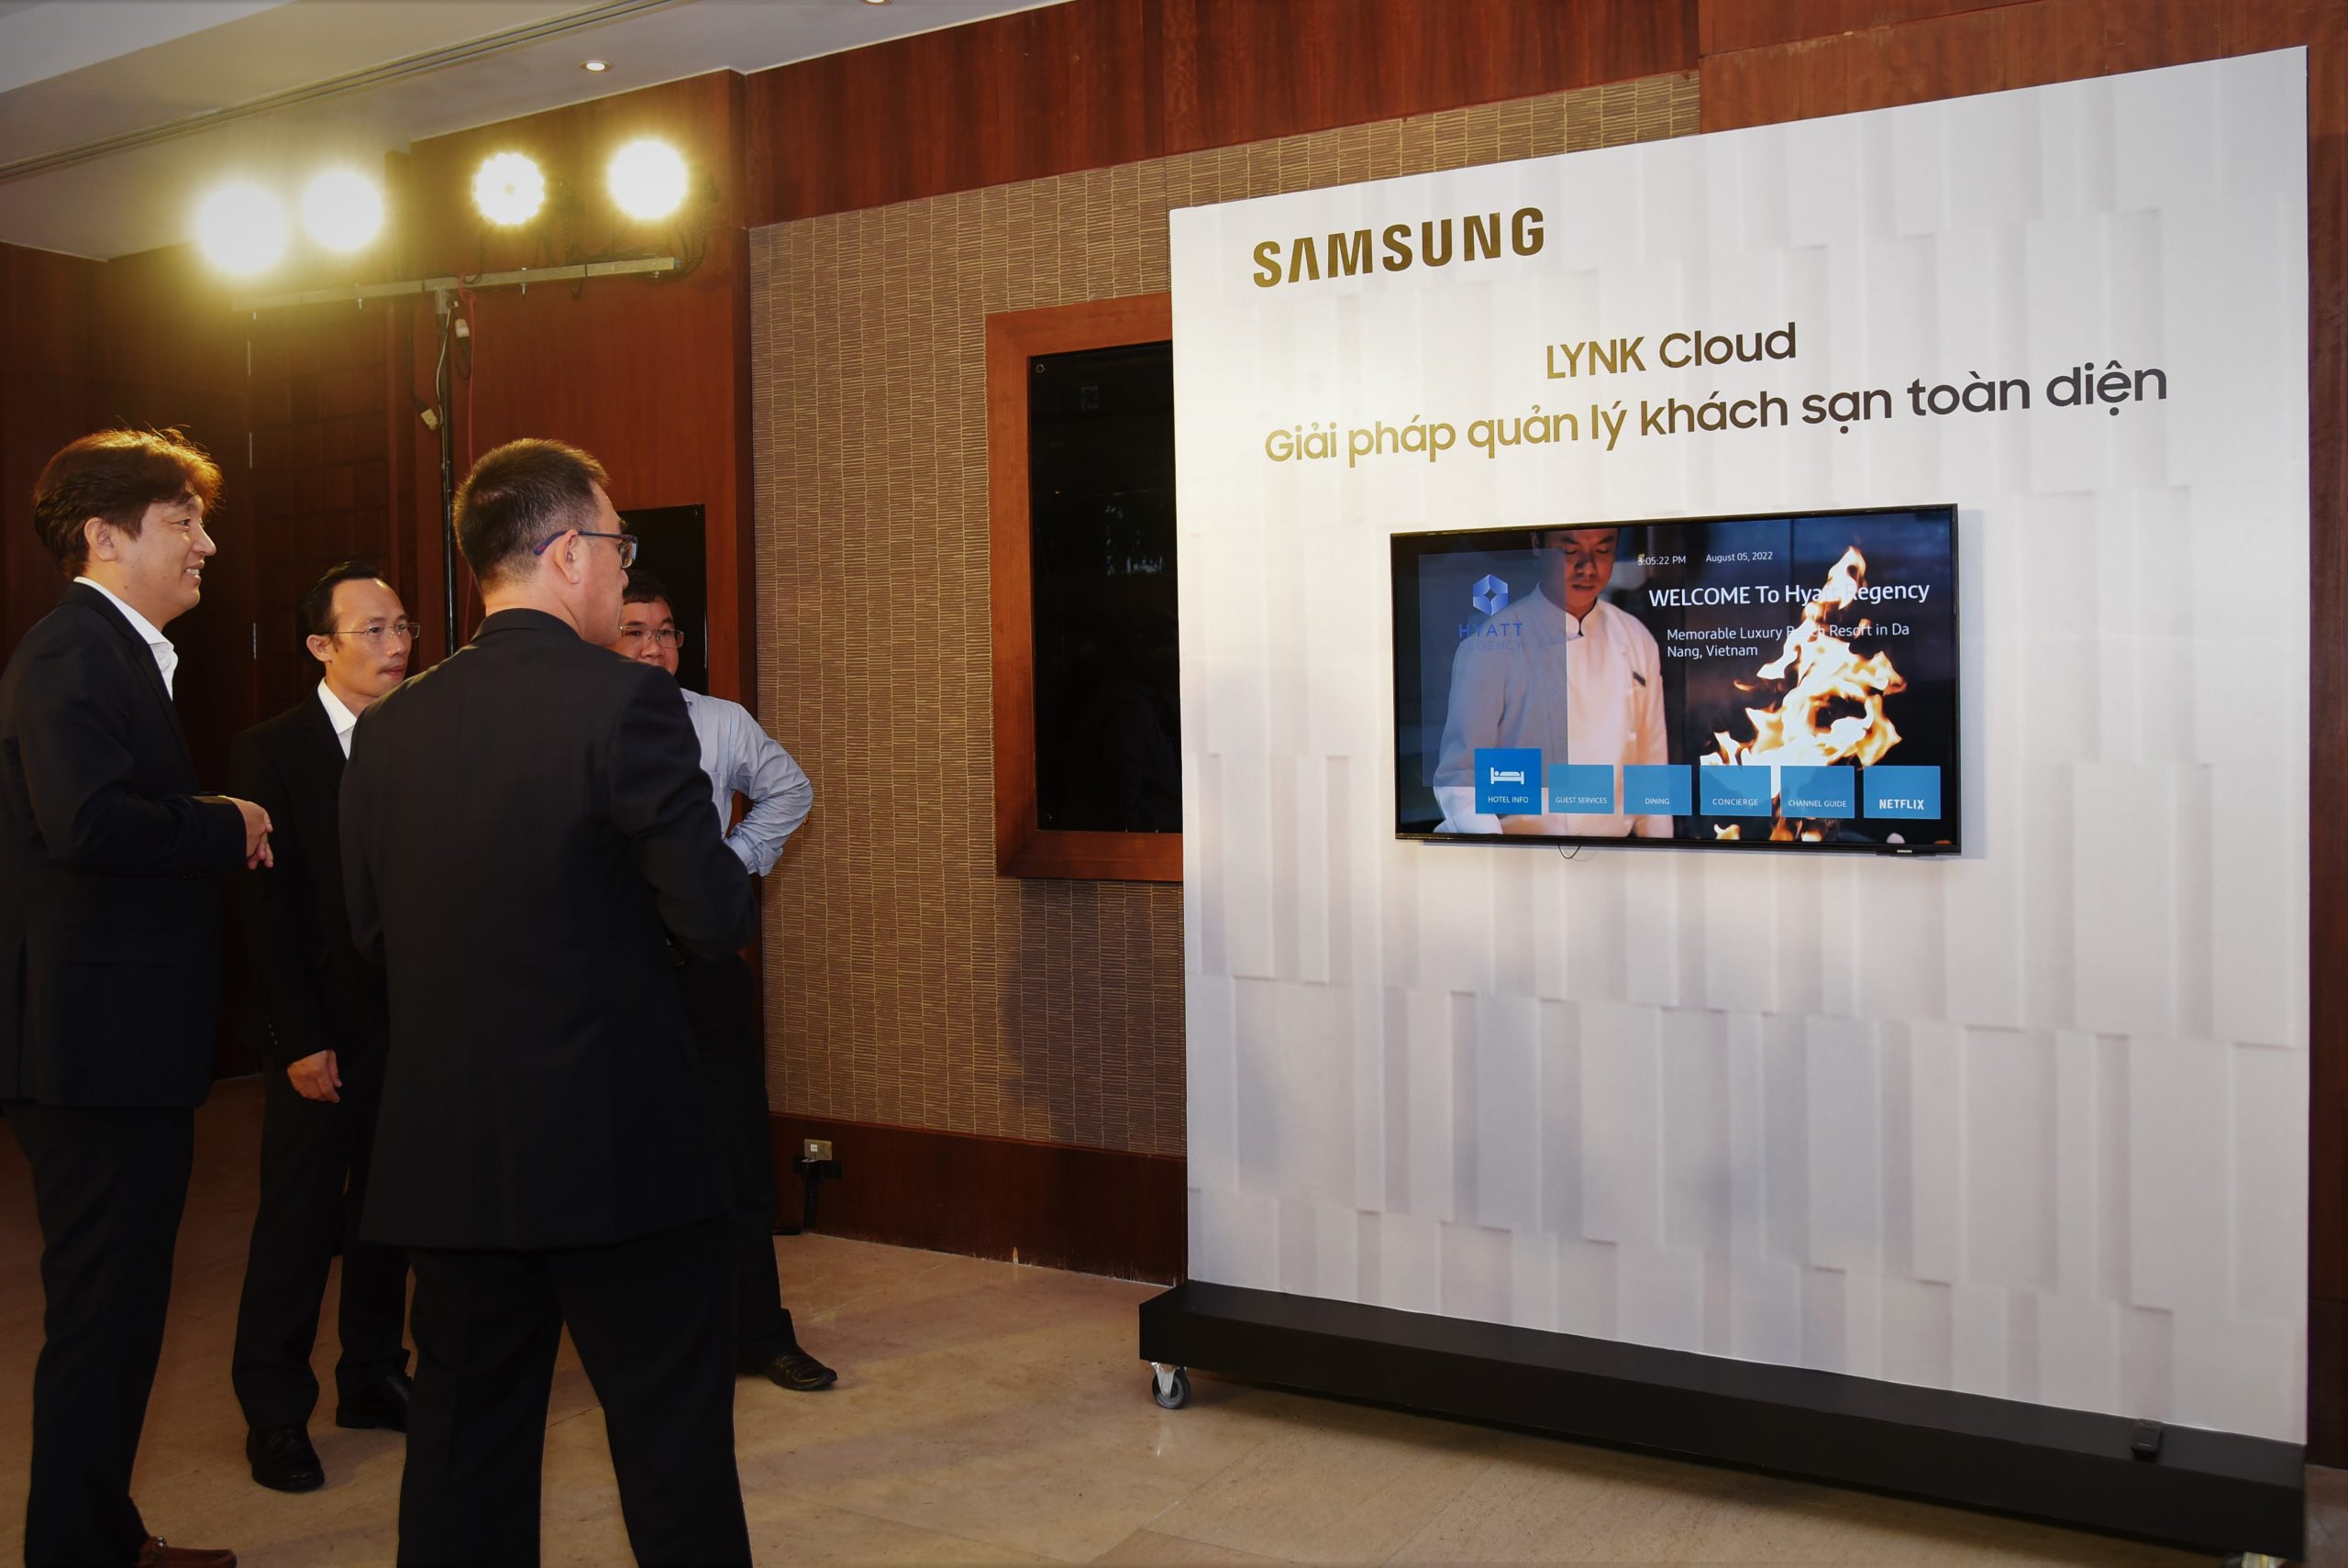 Samsung mở rộng giải pháp cho doanh nghiệp với Hội thảo Công nghệ B2B Tech Summit 2022